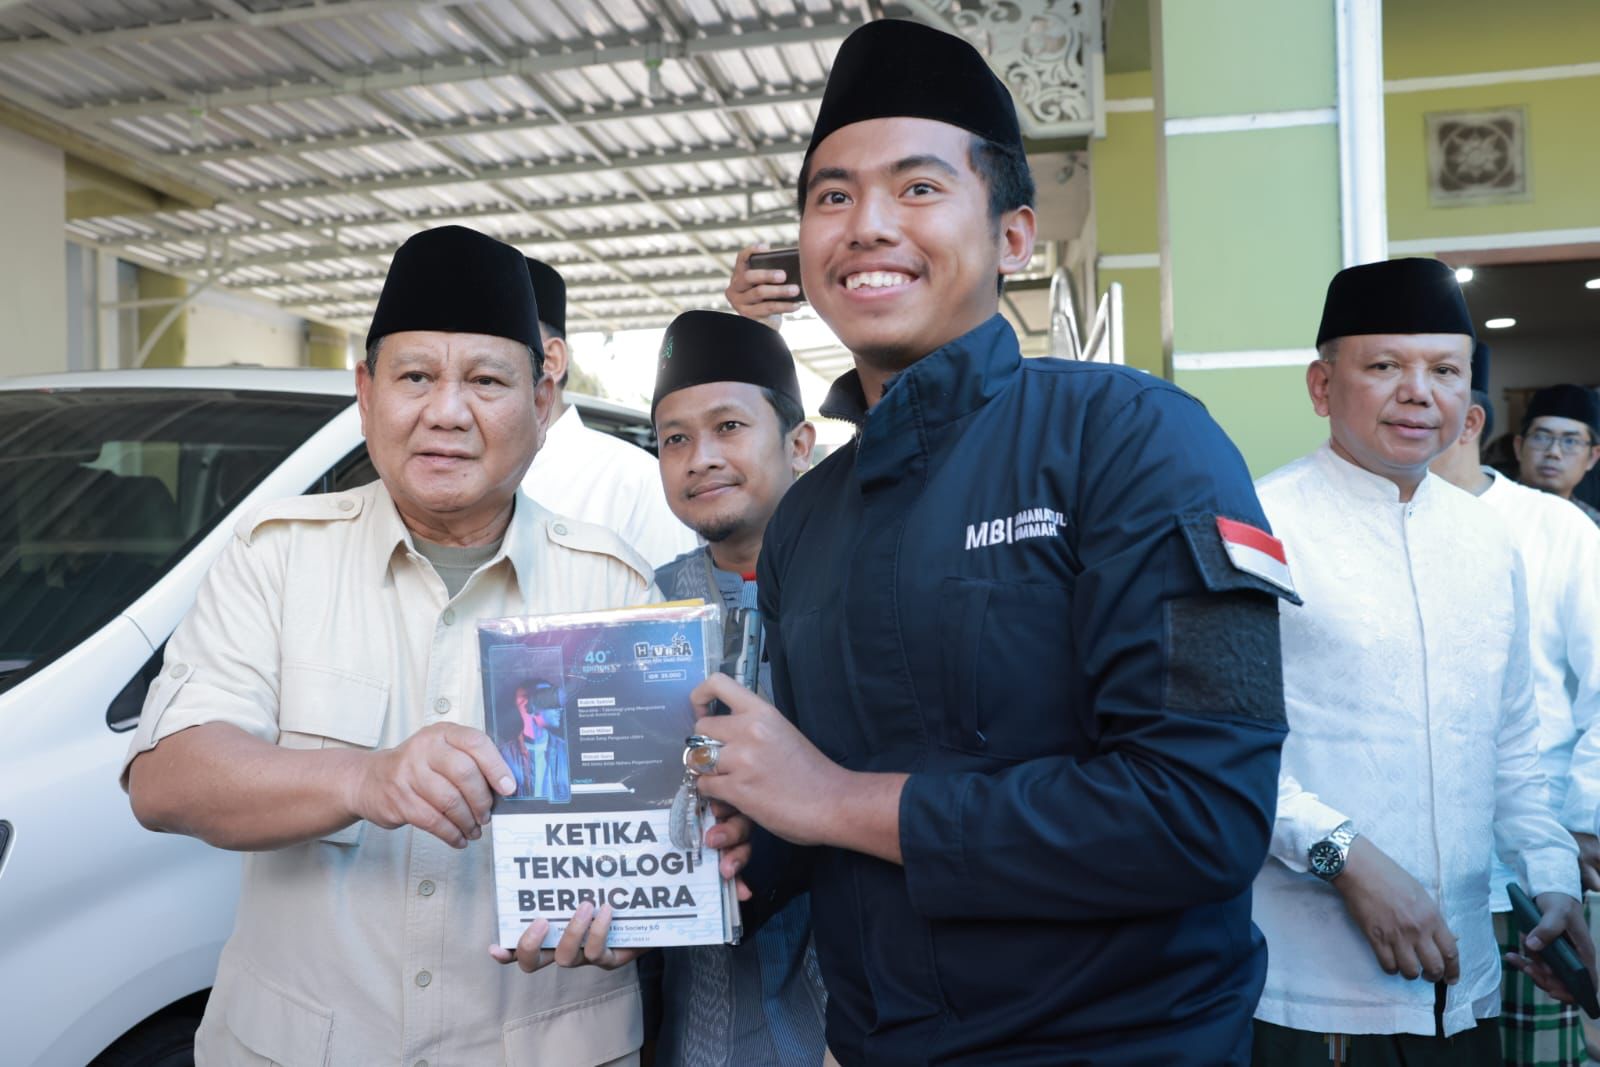 Prabowo berfoto dengan salah satu santri (Sinpo.id/Tim Media)